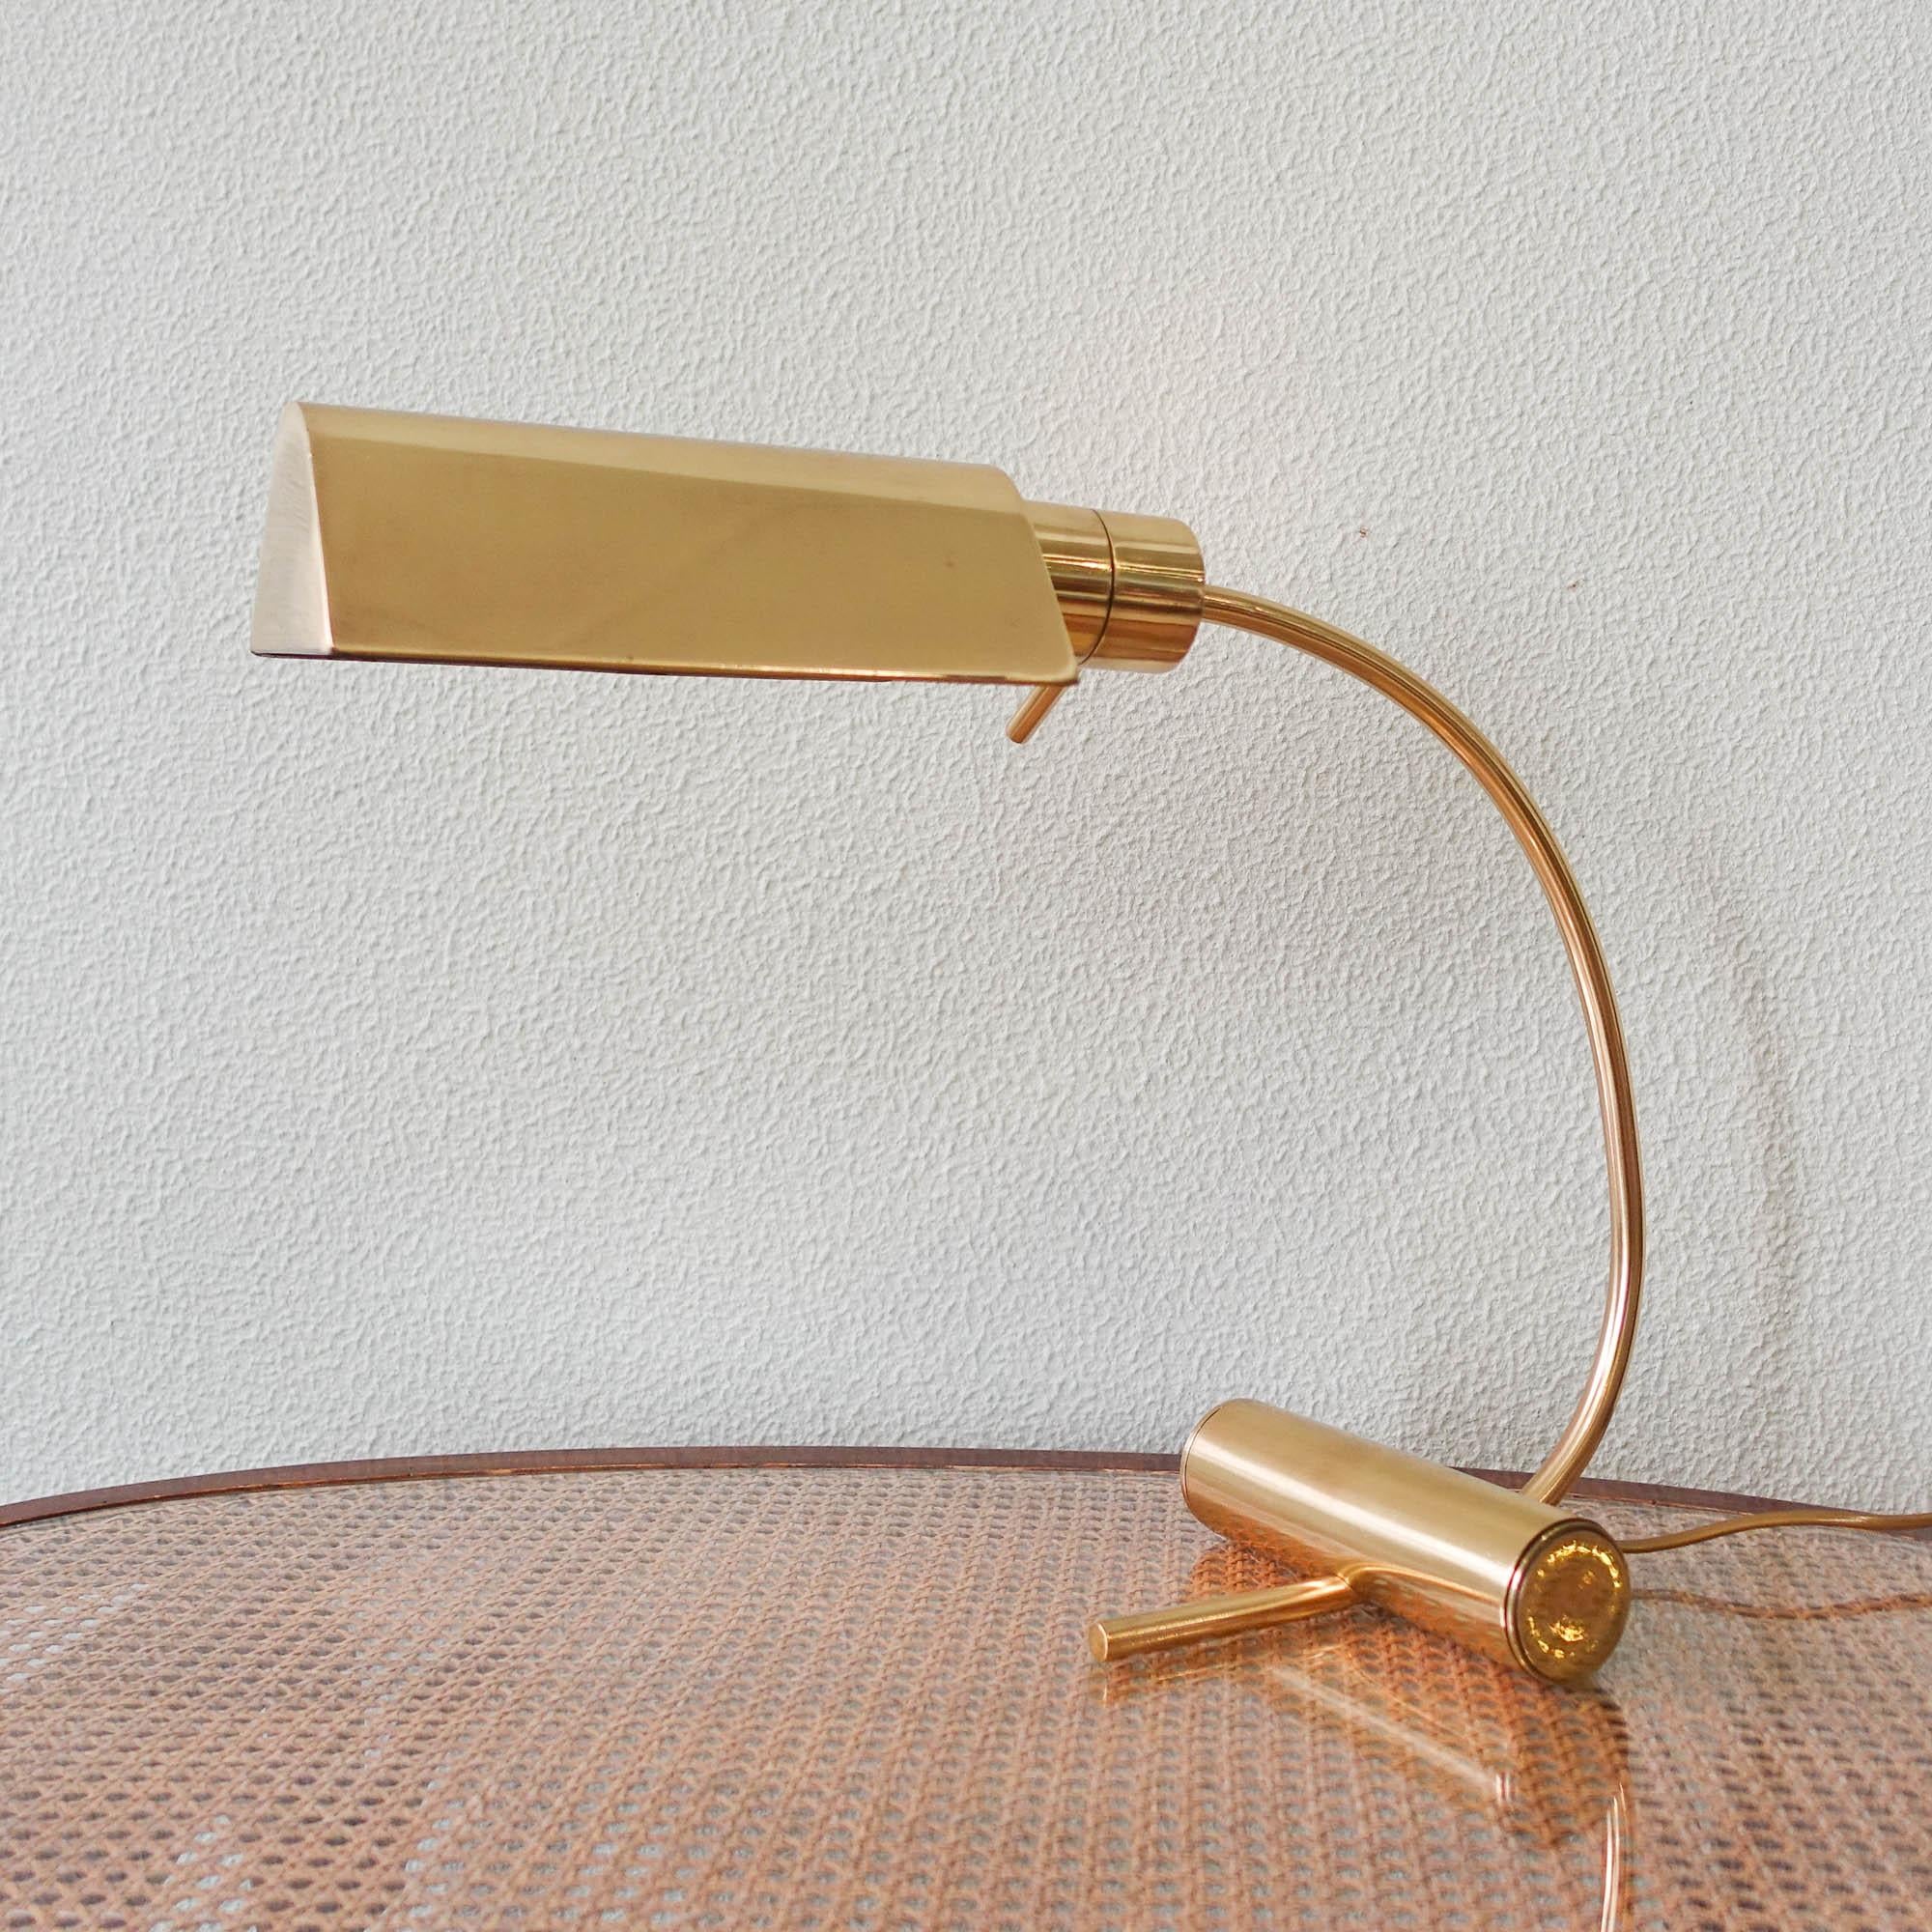 Tischlampe aus Messing von Boulanger, 1970er Jahre (Belgisch)